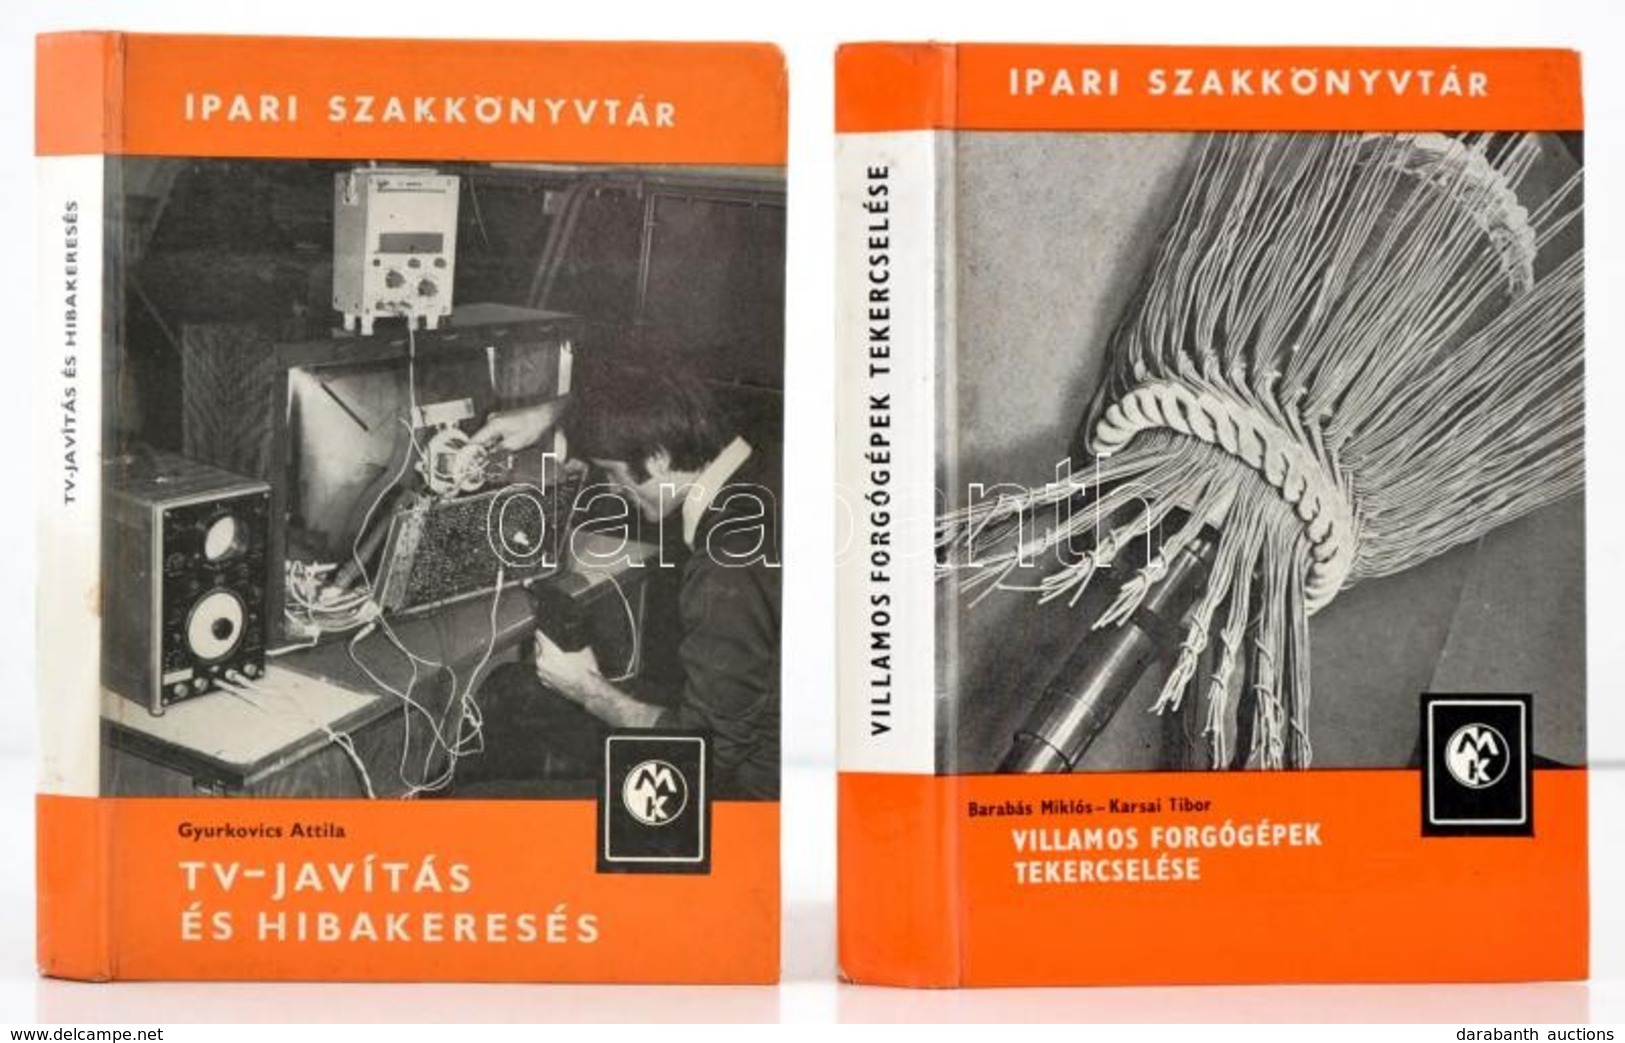 Ipari Szakkönyvtár Sorozat 2 Kötete: 

Barabás Miklós-Karsai Tibor: Villamos Forgógépek Tekercselése. Bp.,1982, M?szaki. - Ohne Zuordnung